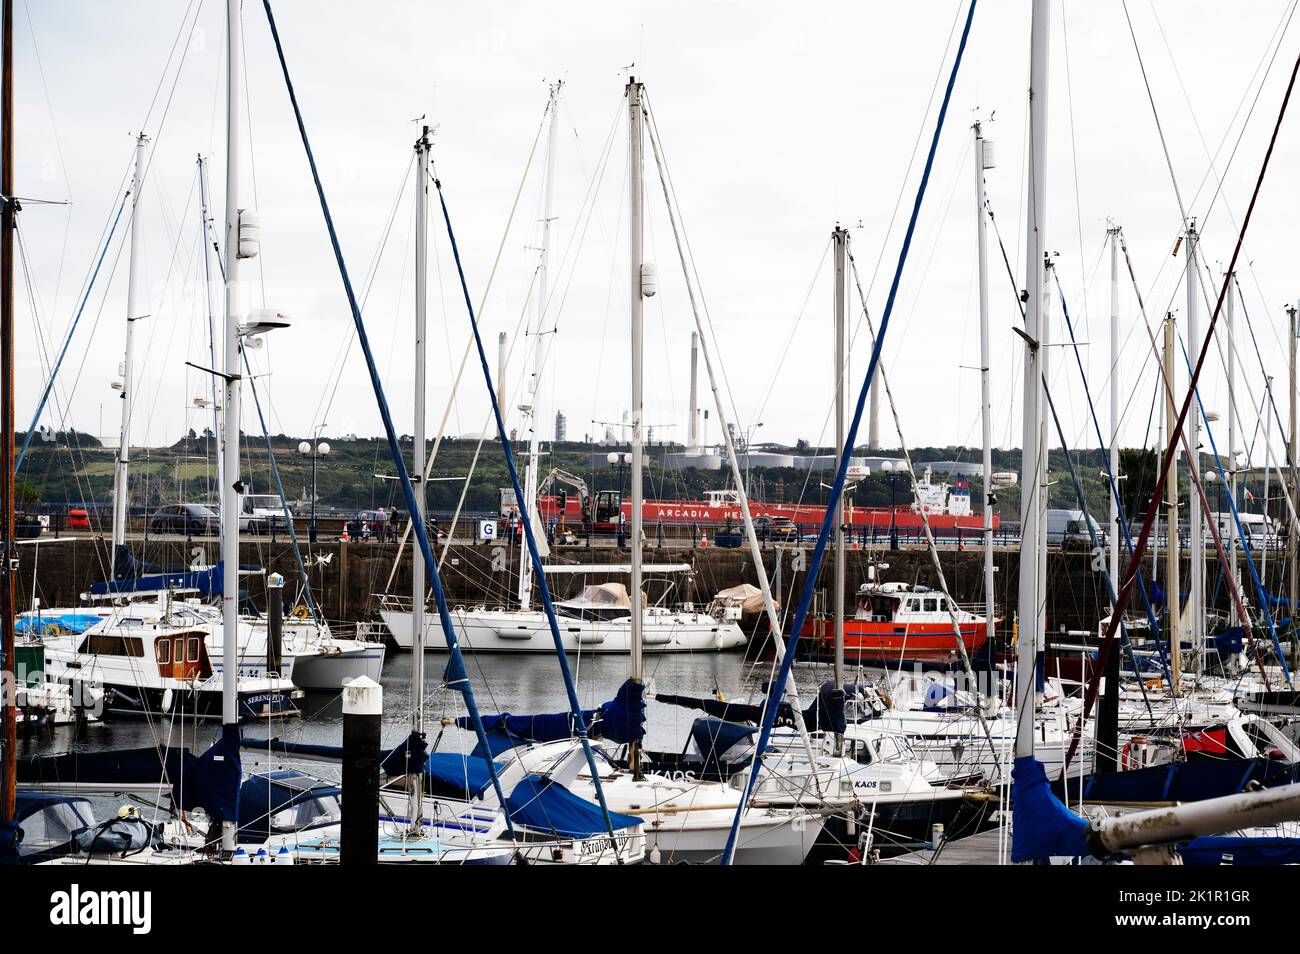 Galles, Pembrokeshire. Porto turistico di Milford Haven. Barche sul loro ormeggio con la petroliera Arcadia Helas in lontananza. Foto Stock